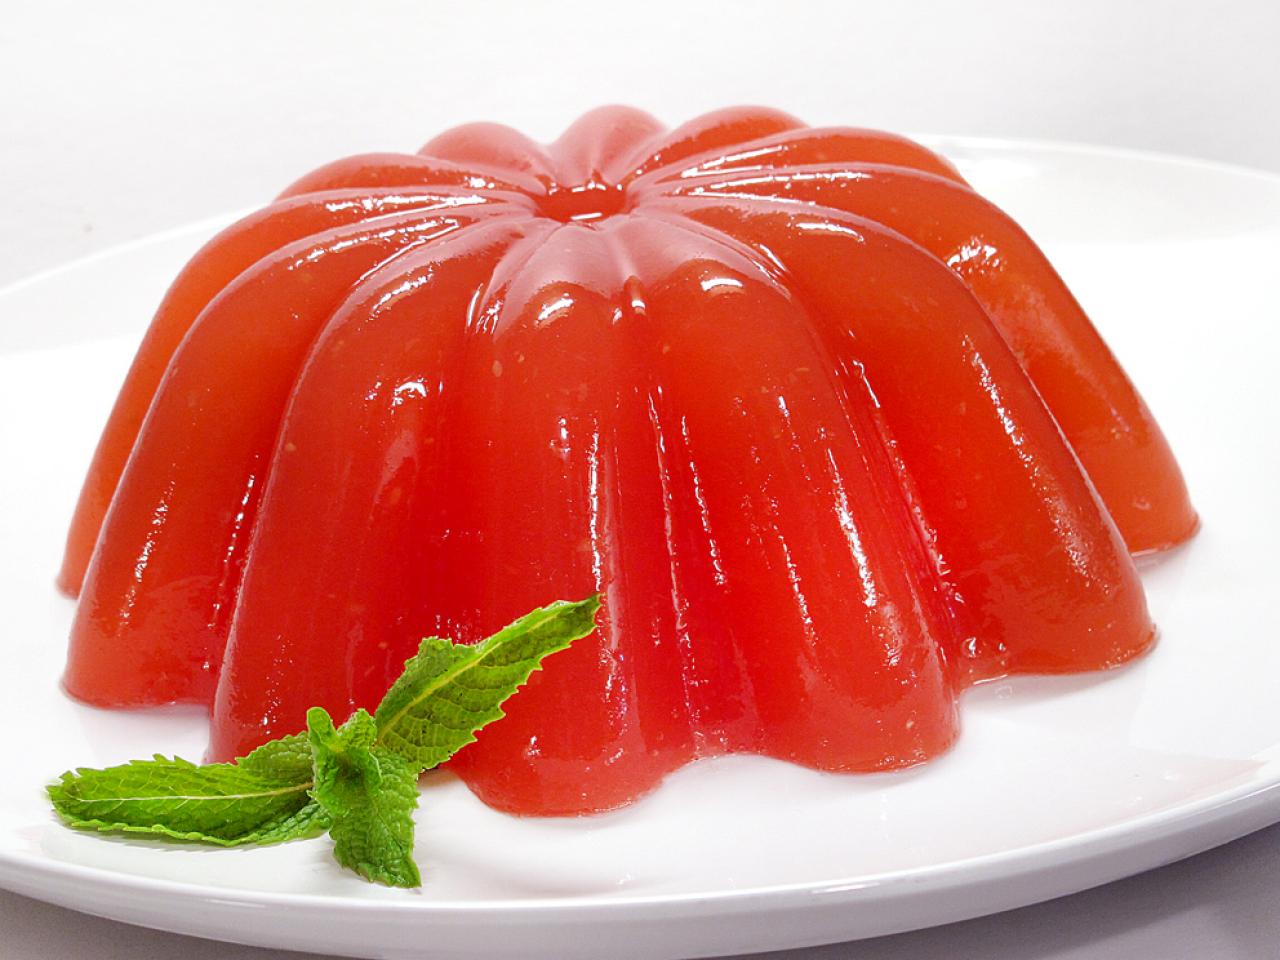 Watermelon Limeade Jello : Recipes : Cooking Channel Recipe